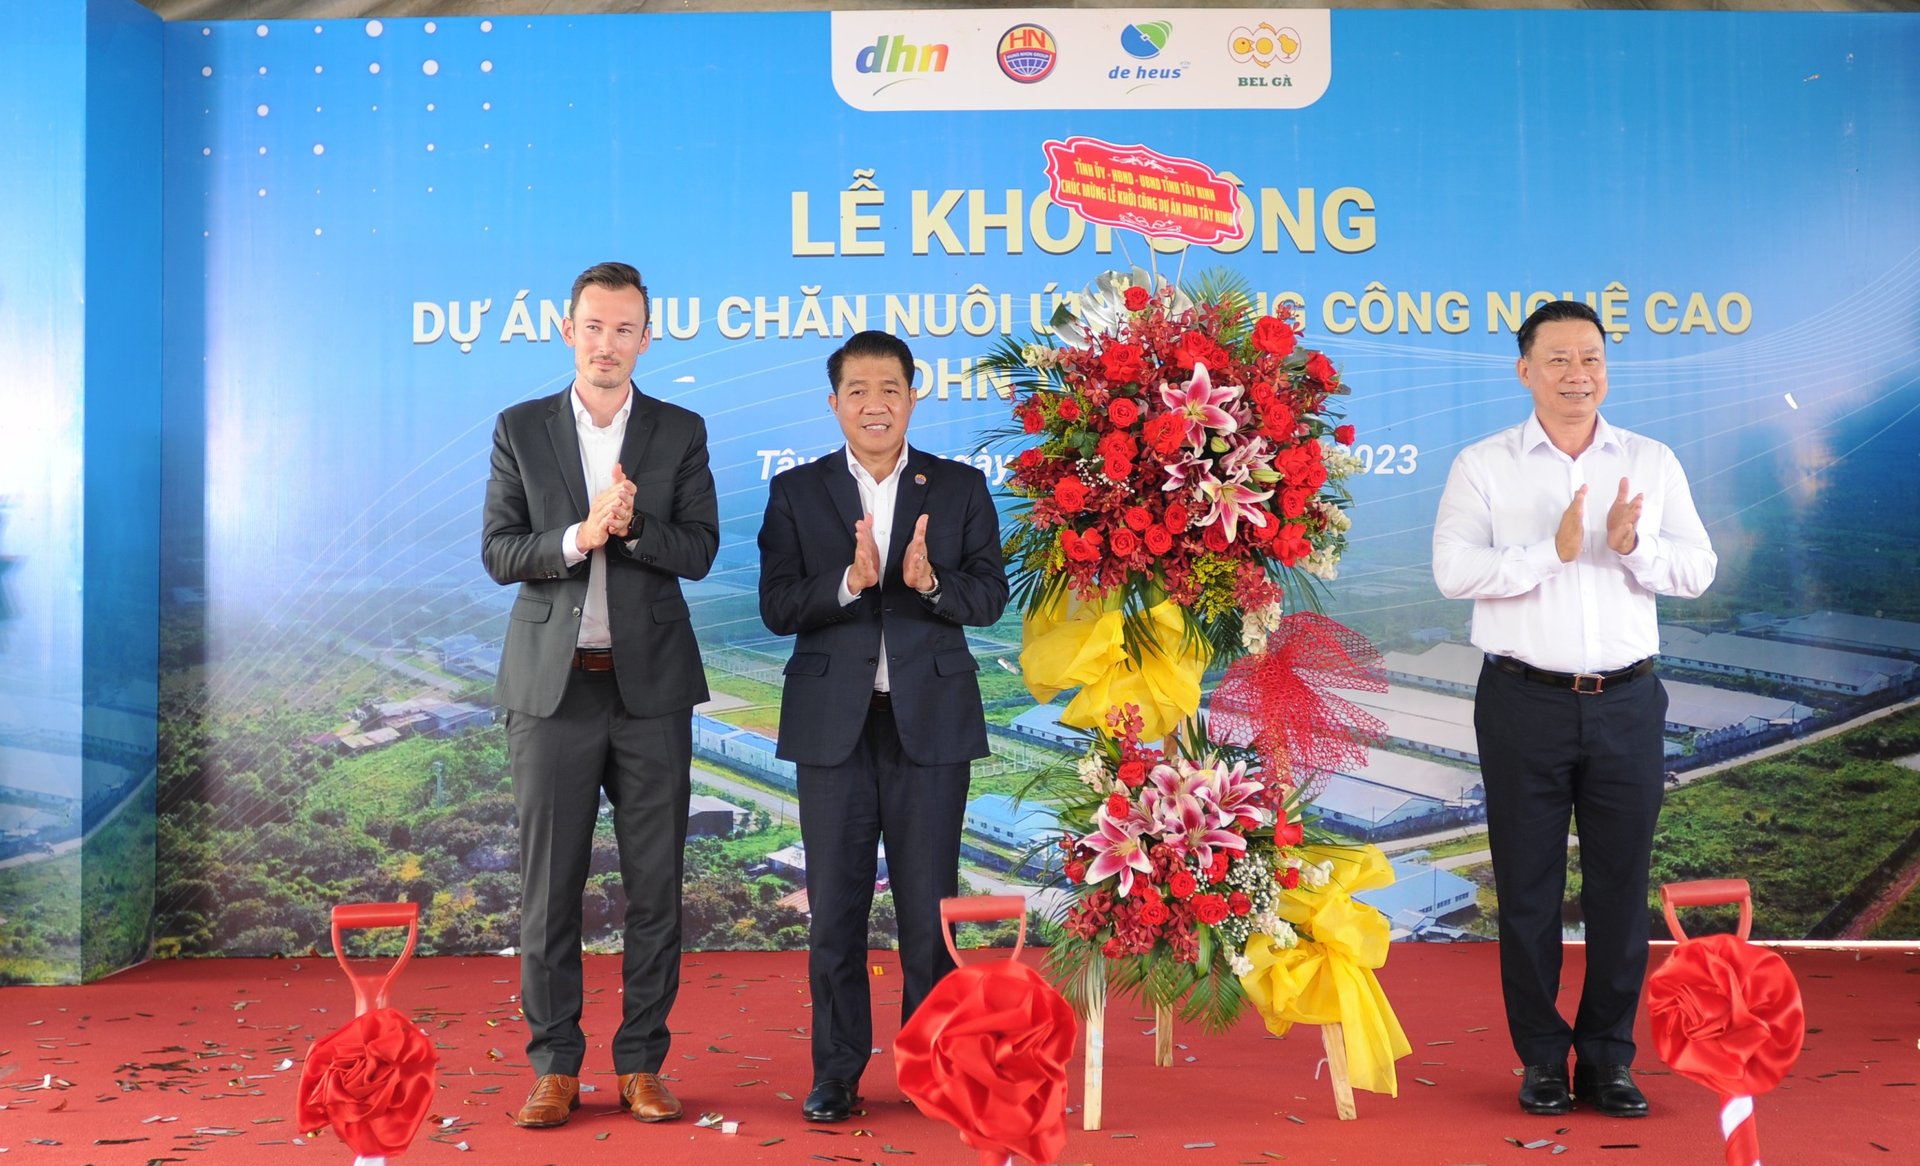 Chủ tịch UBND tỉnh Tây Ninh Nguyễn Thanh Ngọc (ngoài cùng bên phải) thay mặt tỉnh Tây Ninh tặng hoa chúc mừng Tập đoàn Hùng Nhơn và De Heus khởi công dự án nông nghiệp ứng dụng công nghệ cao tại Tây Ninh. Ảnh: HN.